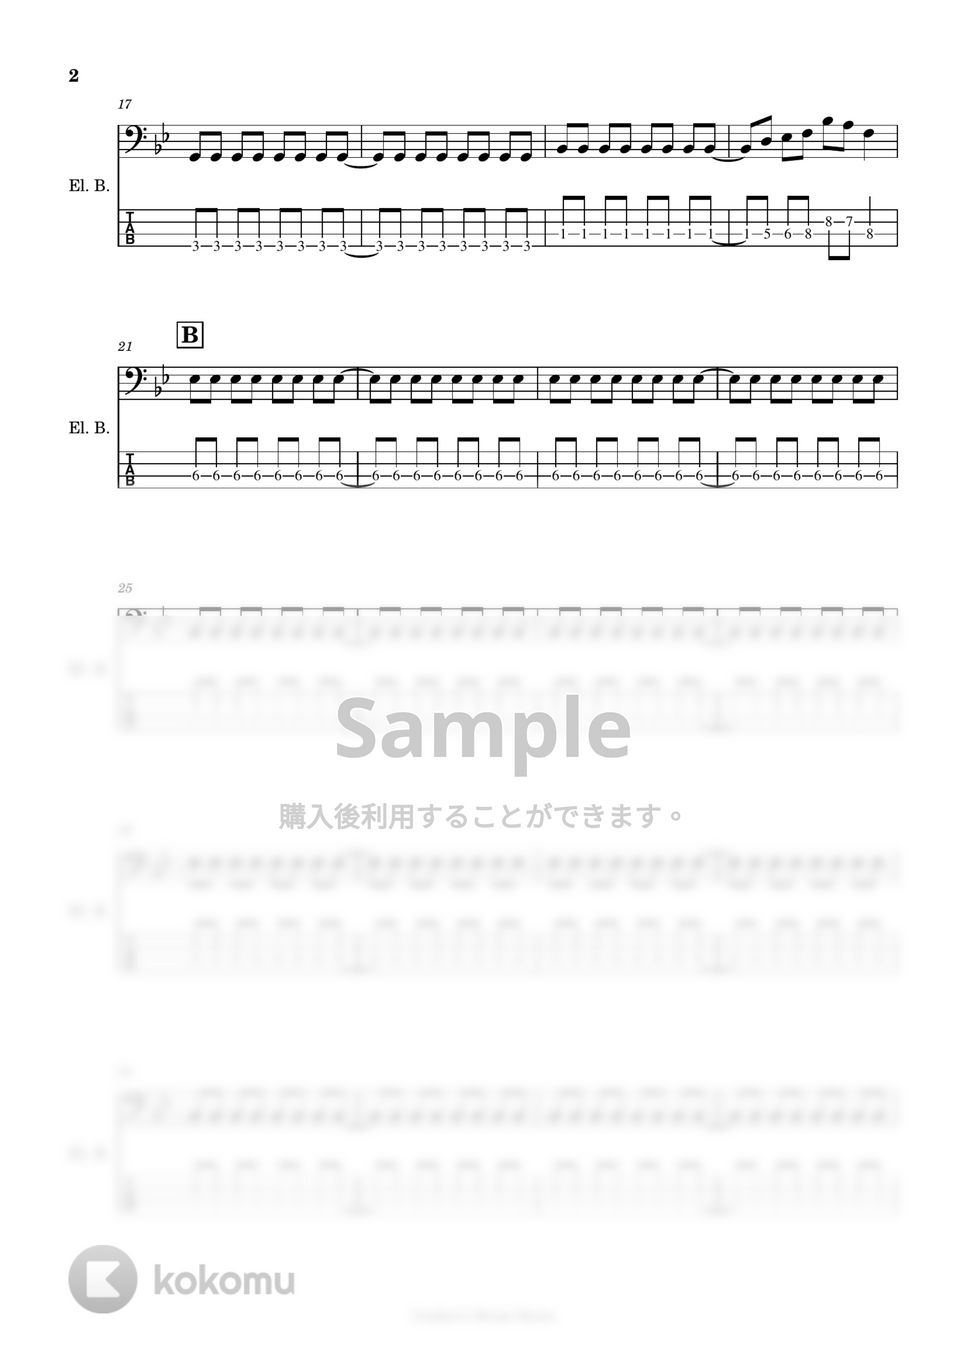 クリープハイプ - 【ベース楽譜】 おやすみ泣き声、さよなら歌姫 / クリープハイプ - Oyasumi nakigoe, sayonara utahime / CreepHyp 【BassScore】 by Cookie's Drum Score